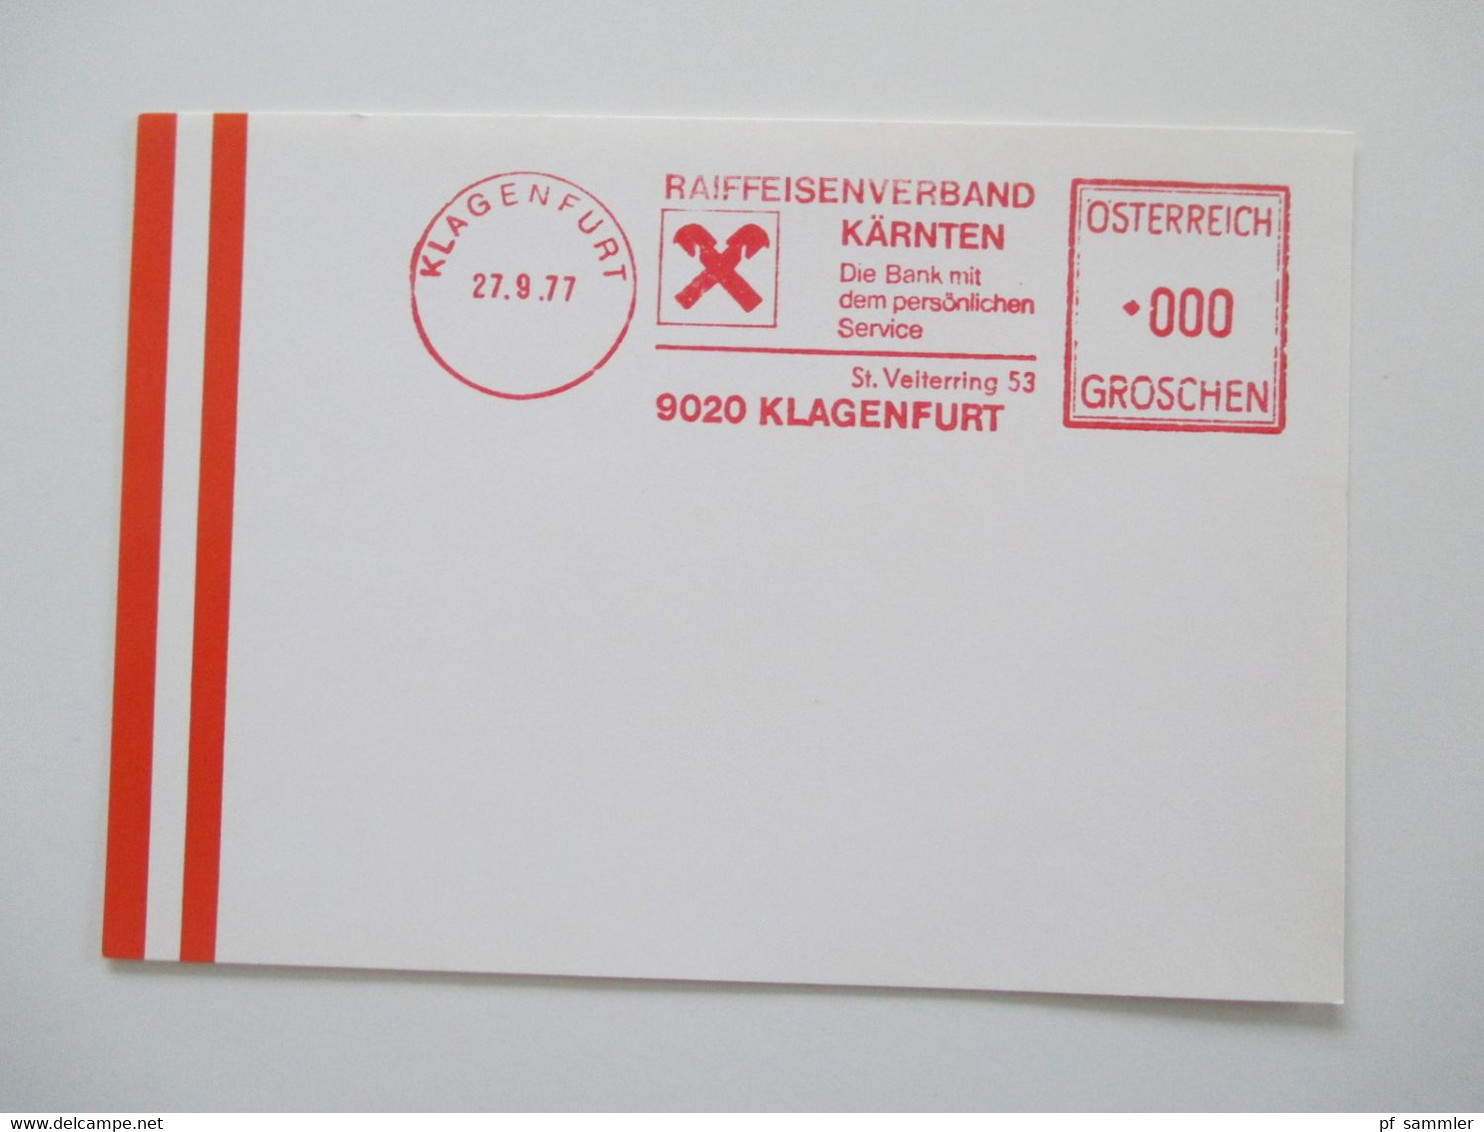 Österreich 1976 - 78 Freistempel Mit Wert 0000 Groschen Insgesamt 29 Stempelbelege / Blanko Karten Alles Verschiedene St - Cartas & Documentos